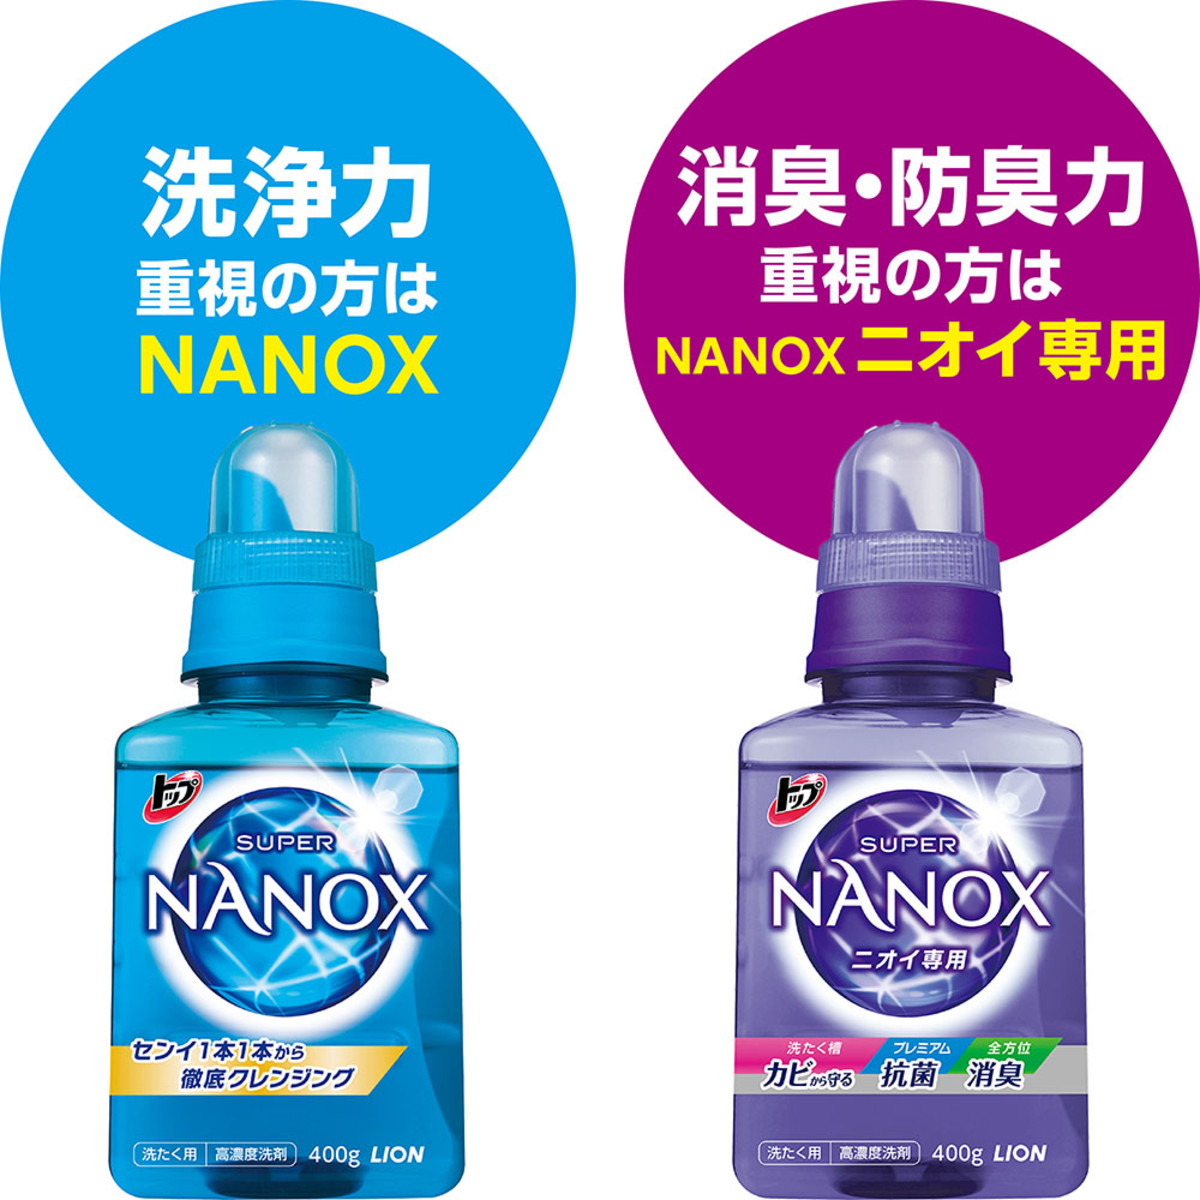 トップ スーパーナノックス NANOX 液体洗濯洗剤 高濃度 詰め替え用 超特大 1230g×6袋